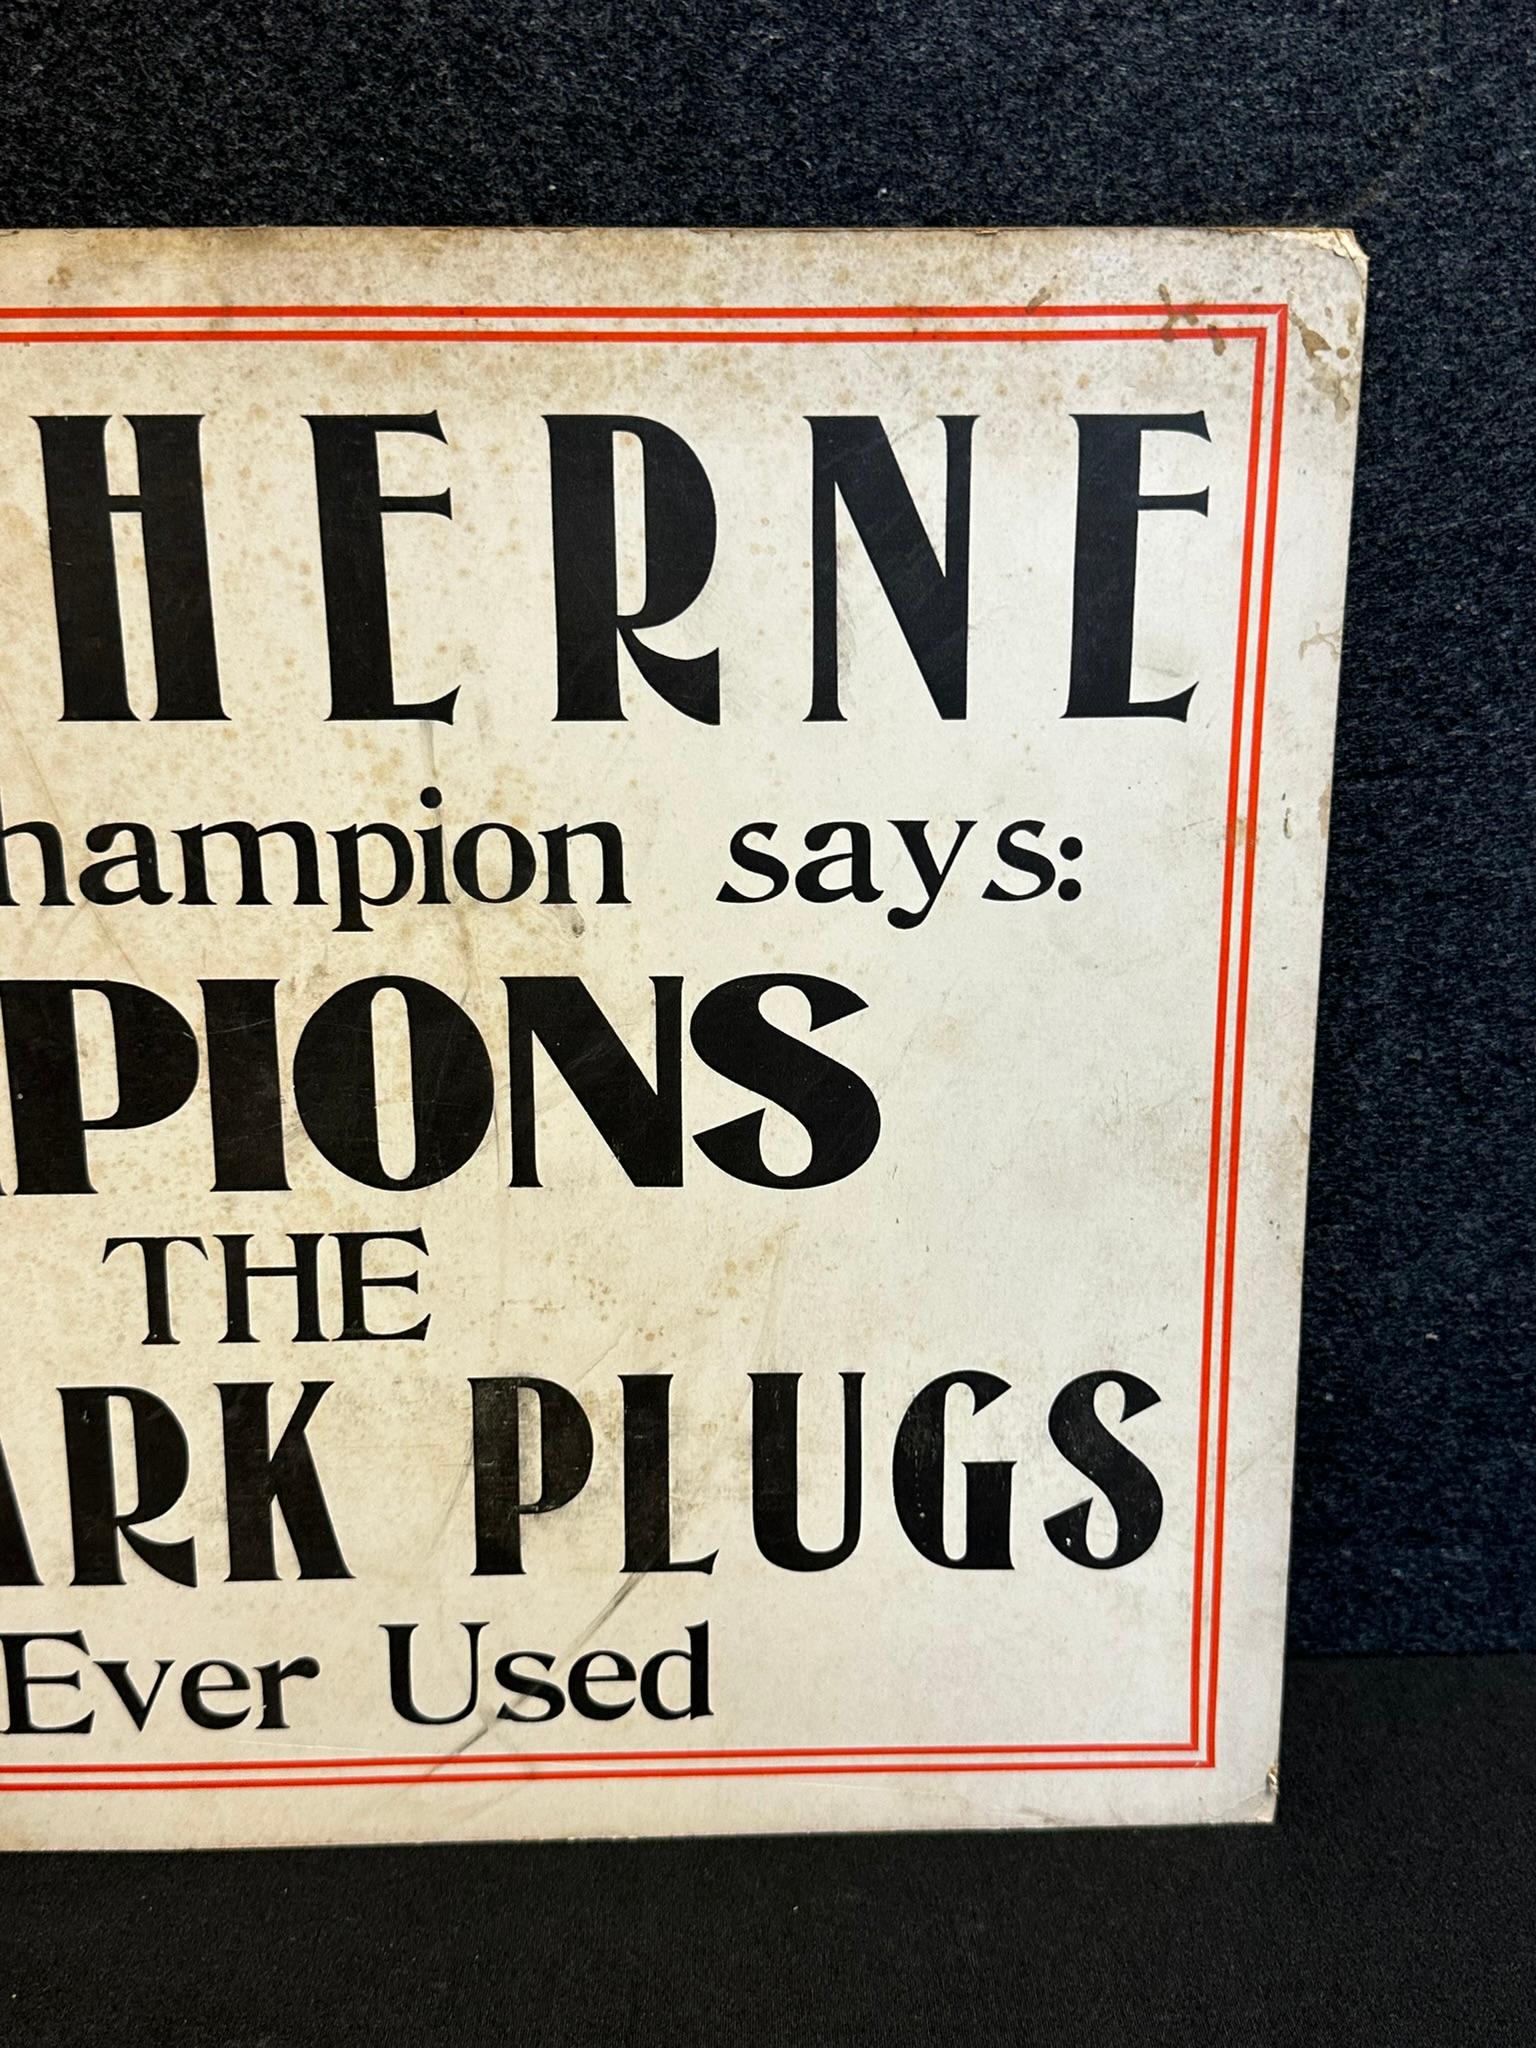 Pair Eddie Herne 1923 Champion Spark Plugs Advertising Cardstock Signs